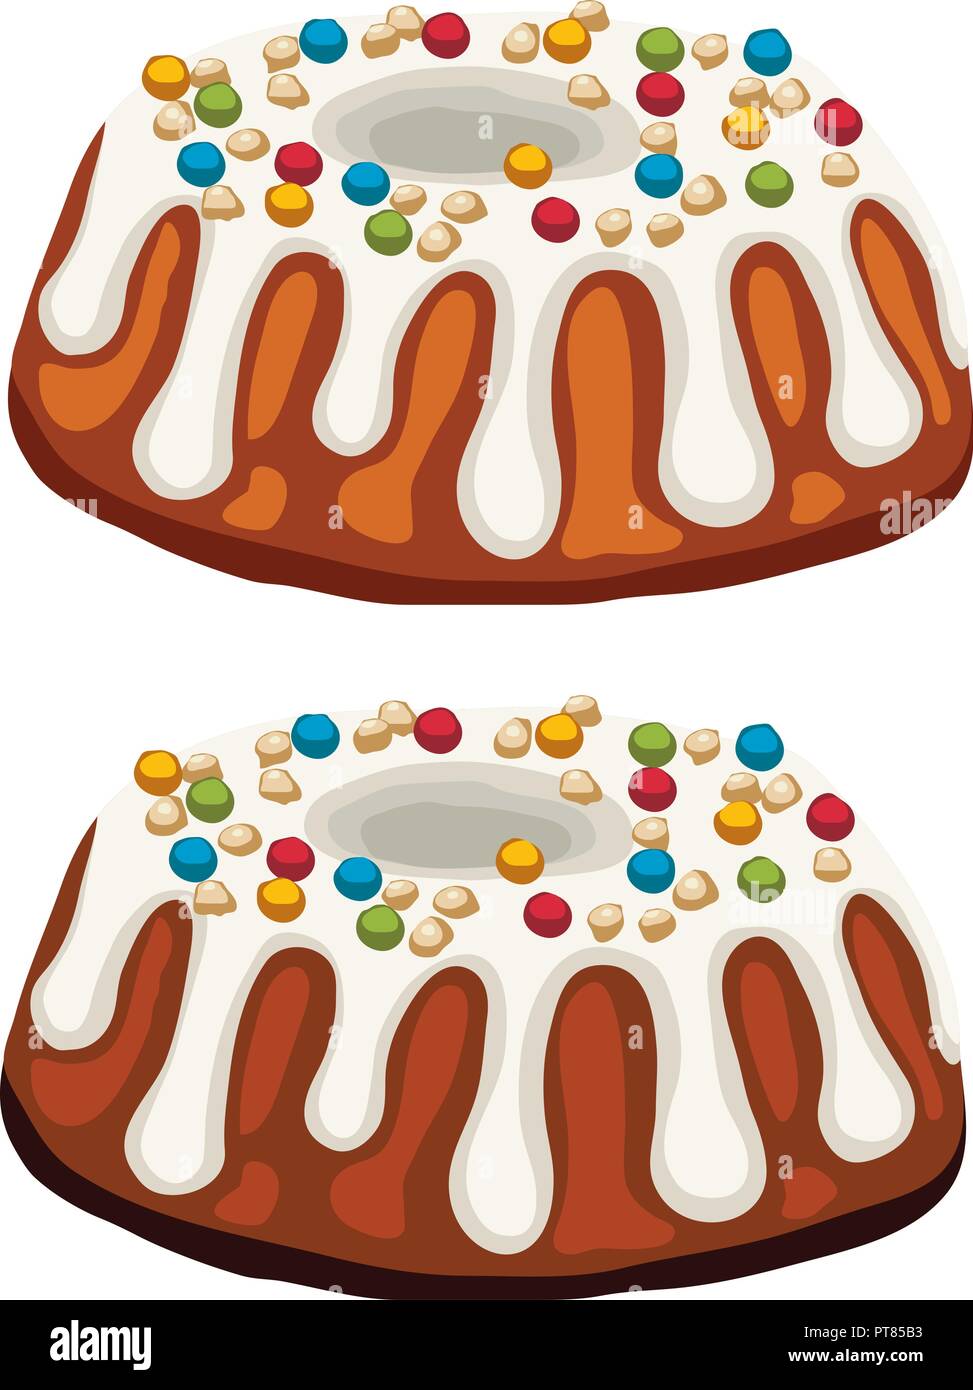 Vector torte fatte in casa isolata su sfondo bianco. cotta dessert torta al cioccolato, noci, frutta e glassa bianca Illustrazione Vettoriale